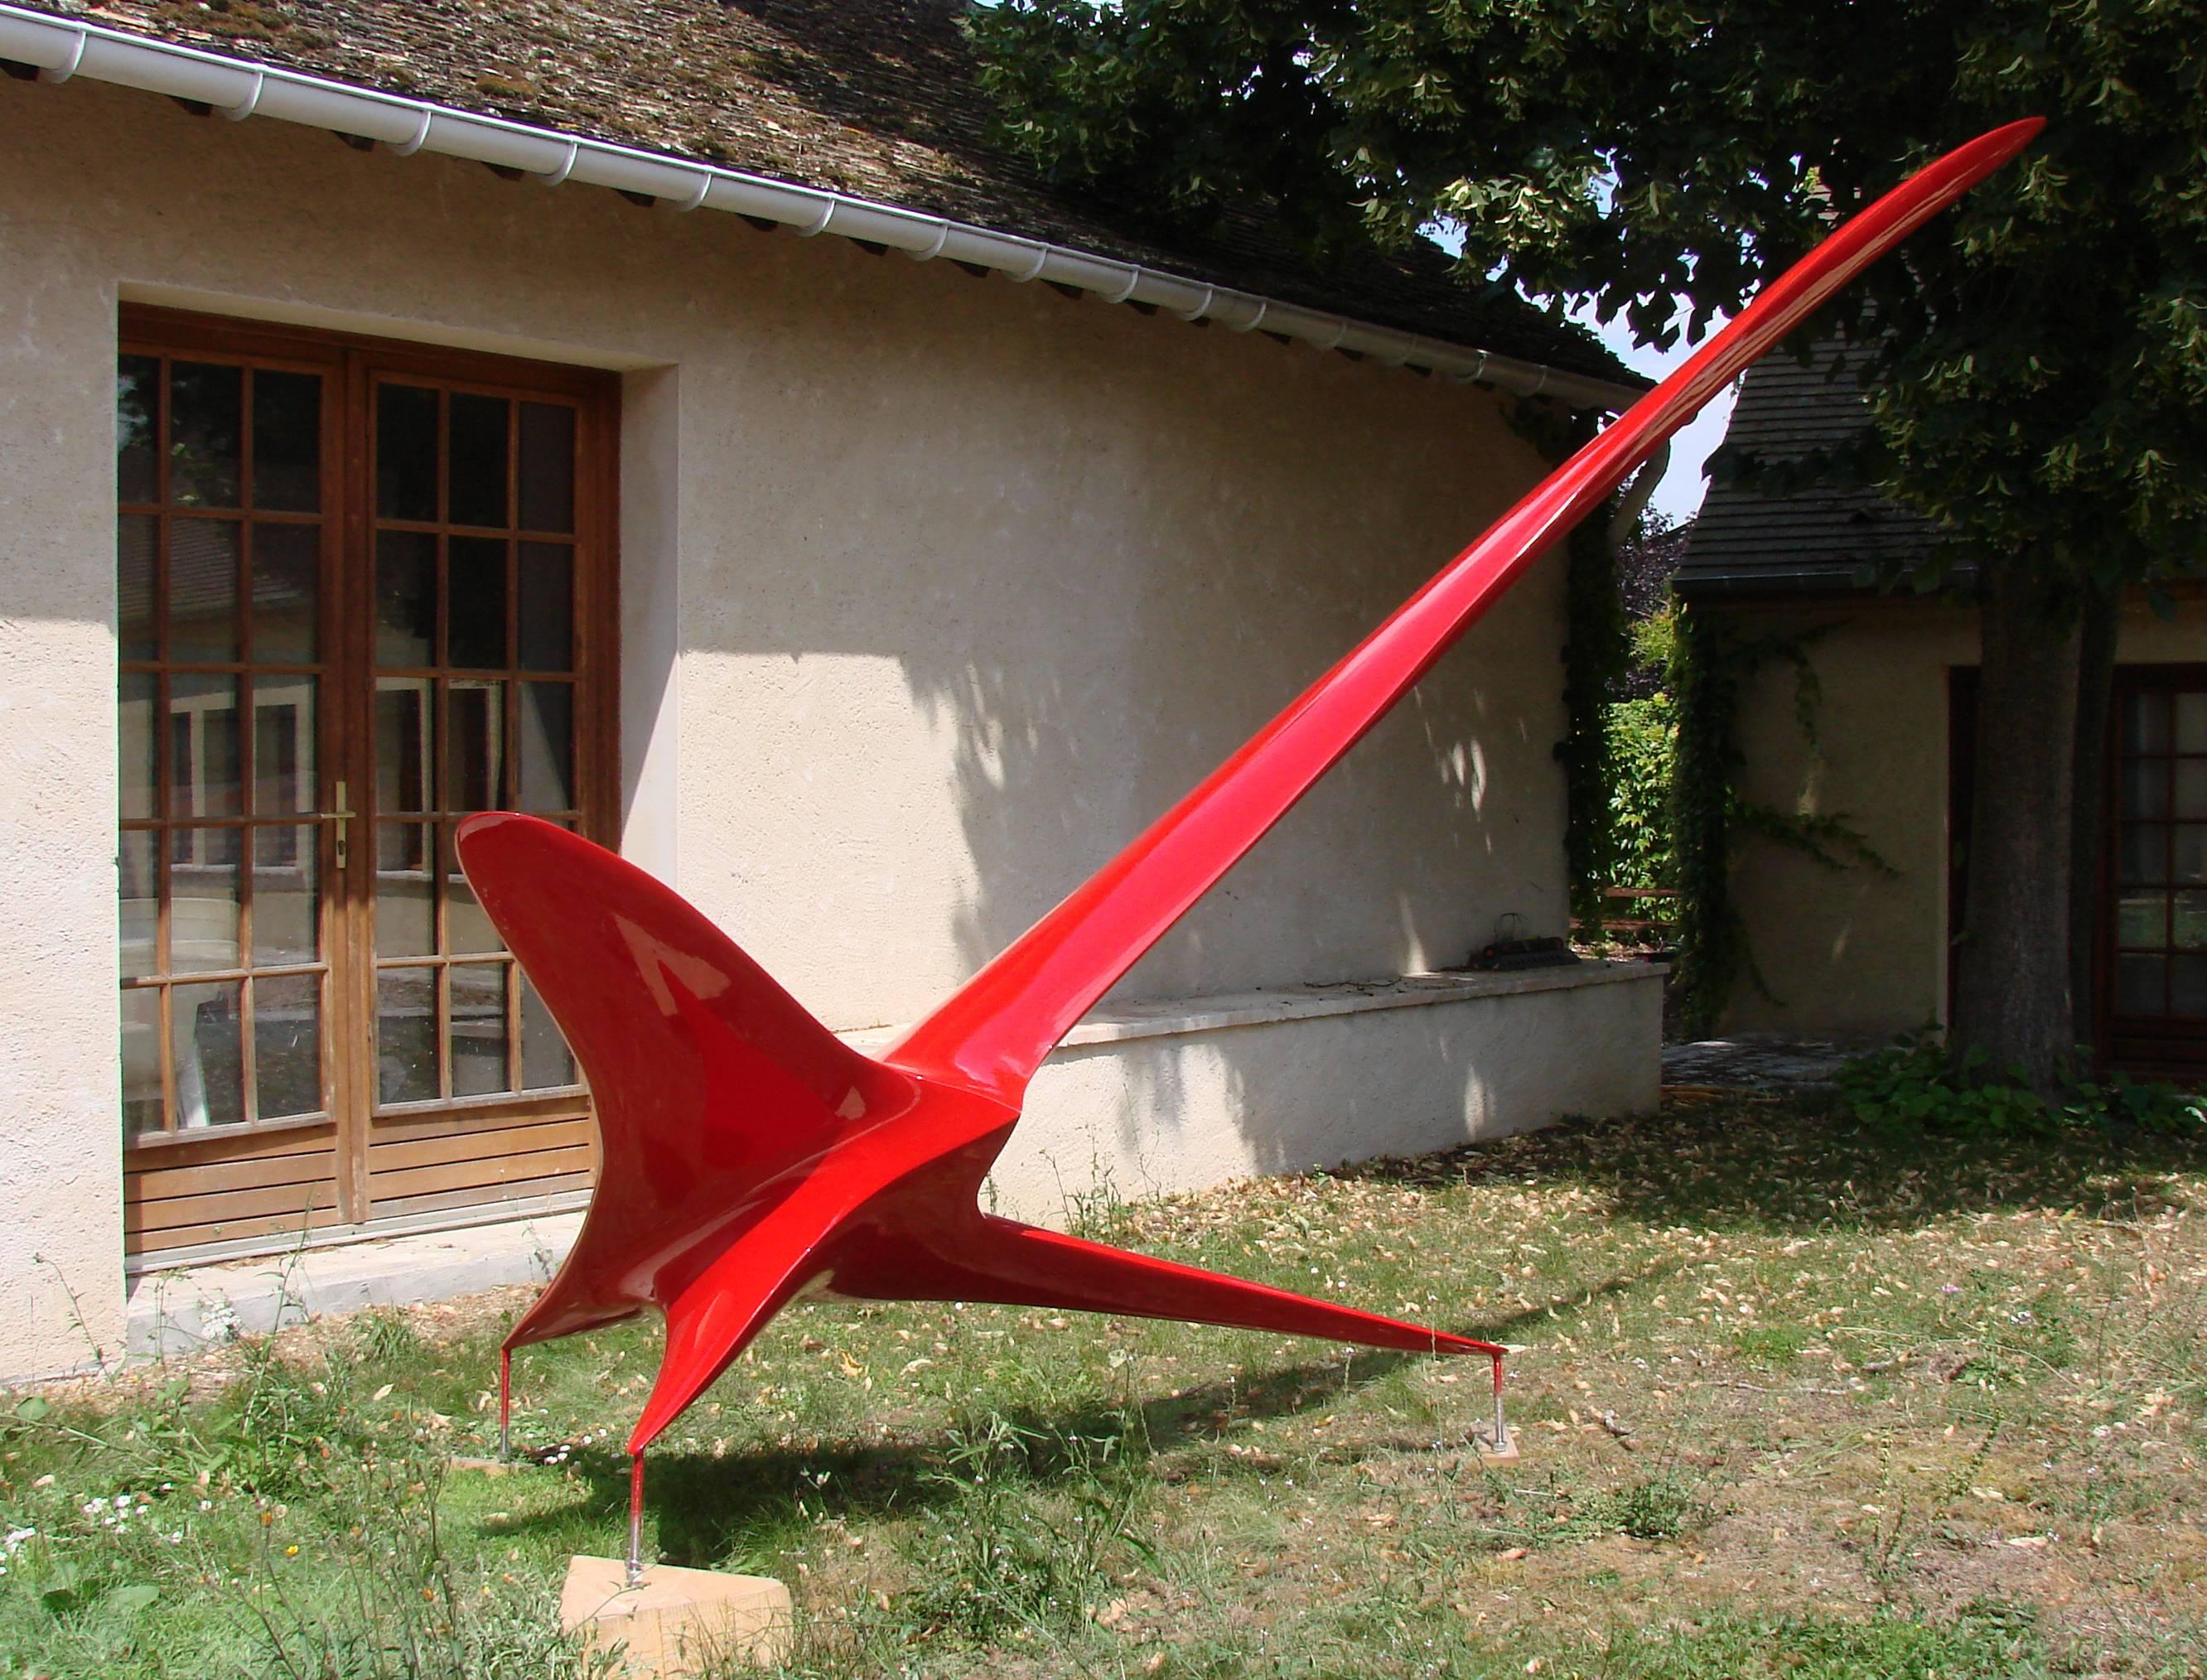 Twin Bird V est une sculpture en résine réalisée par Patrice Breteau, un artiste contemporain français. Cette pièce est disponible en huit couleurs différentes, toutes résistantes à l'exposition aux UV et aux intempéries extérieures.  
Libéré de la